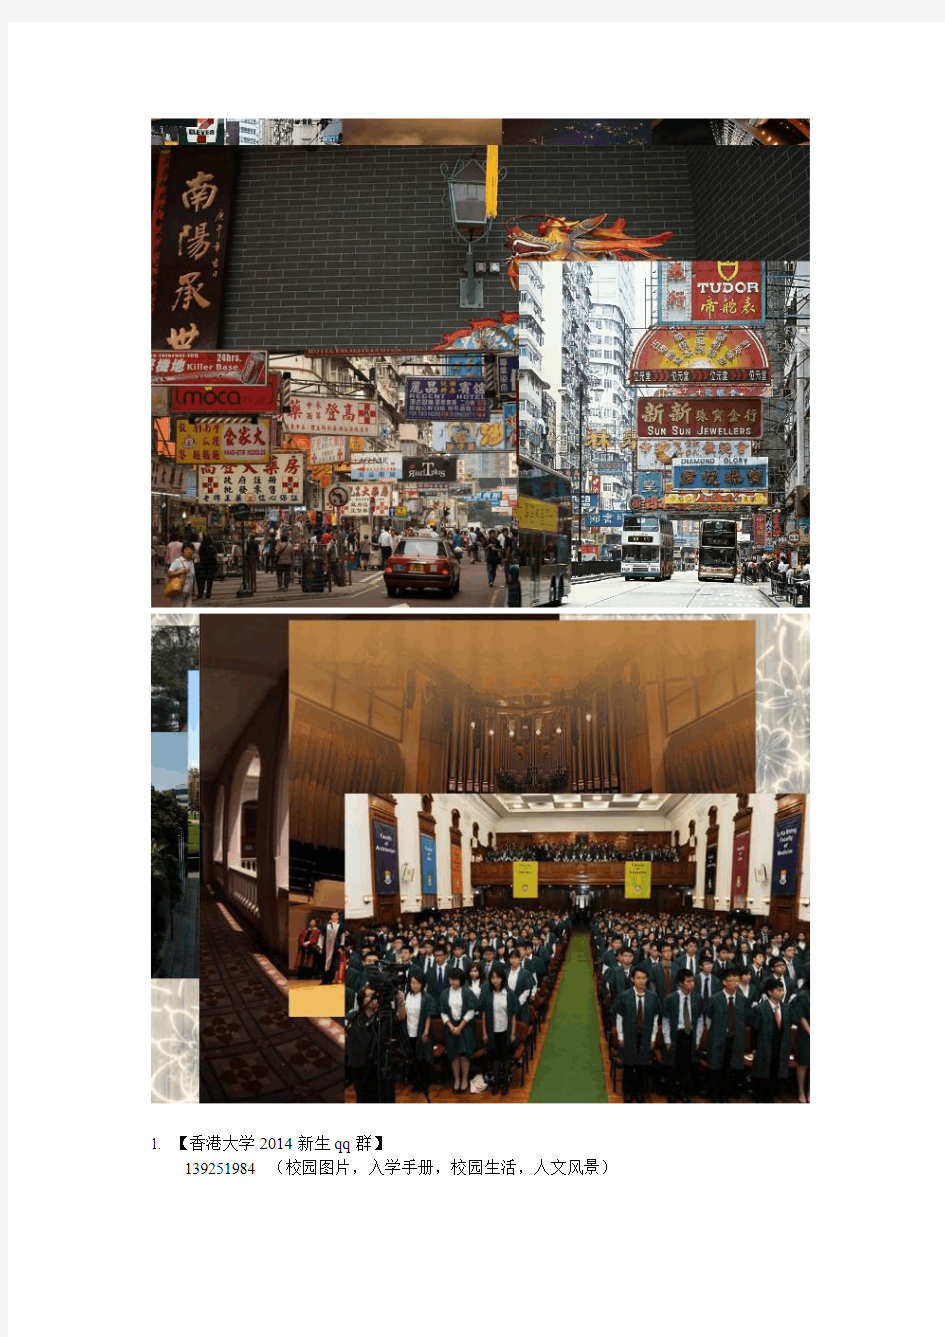 香港大学2014新生手册